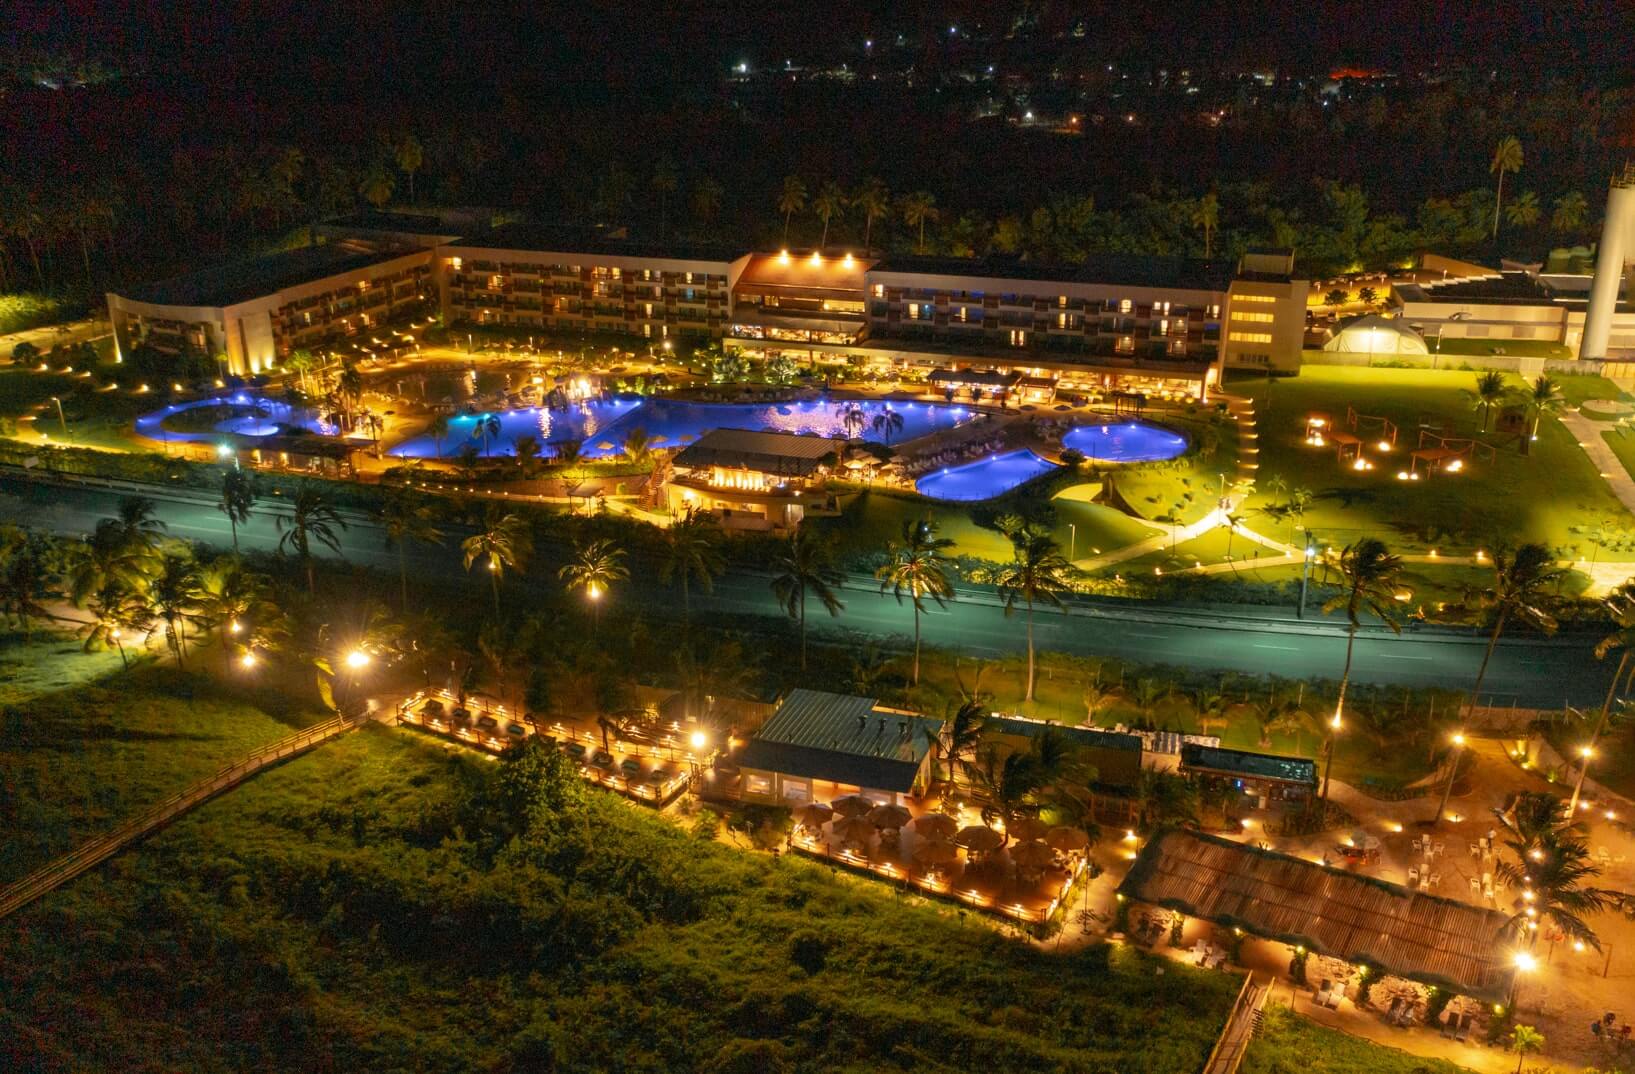 Vista aérea completa do resort a noite, iluminação artificial se destaca na imagem.